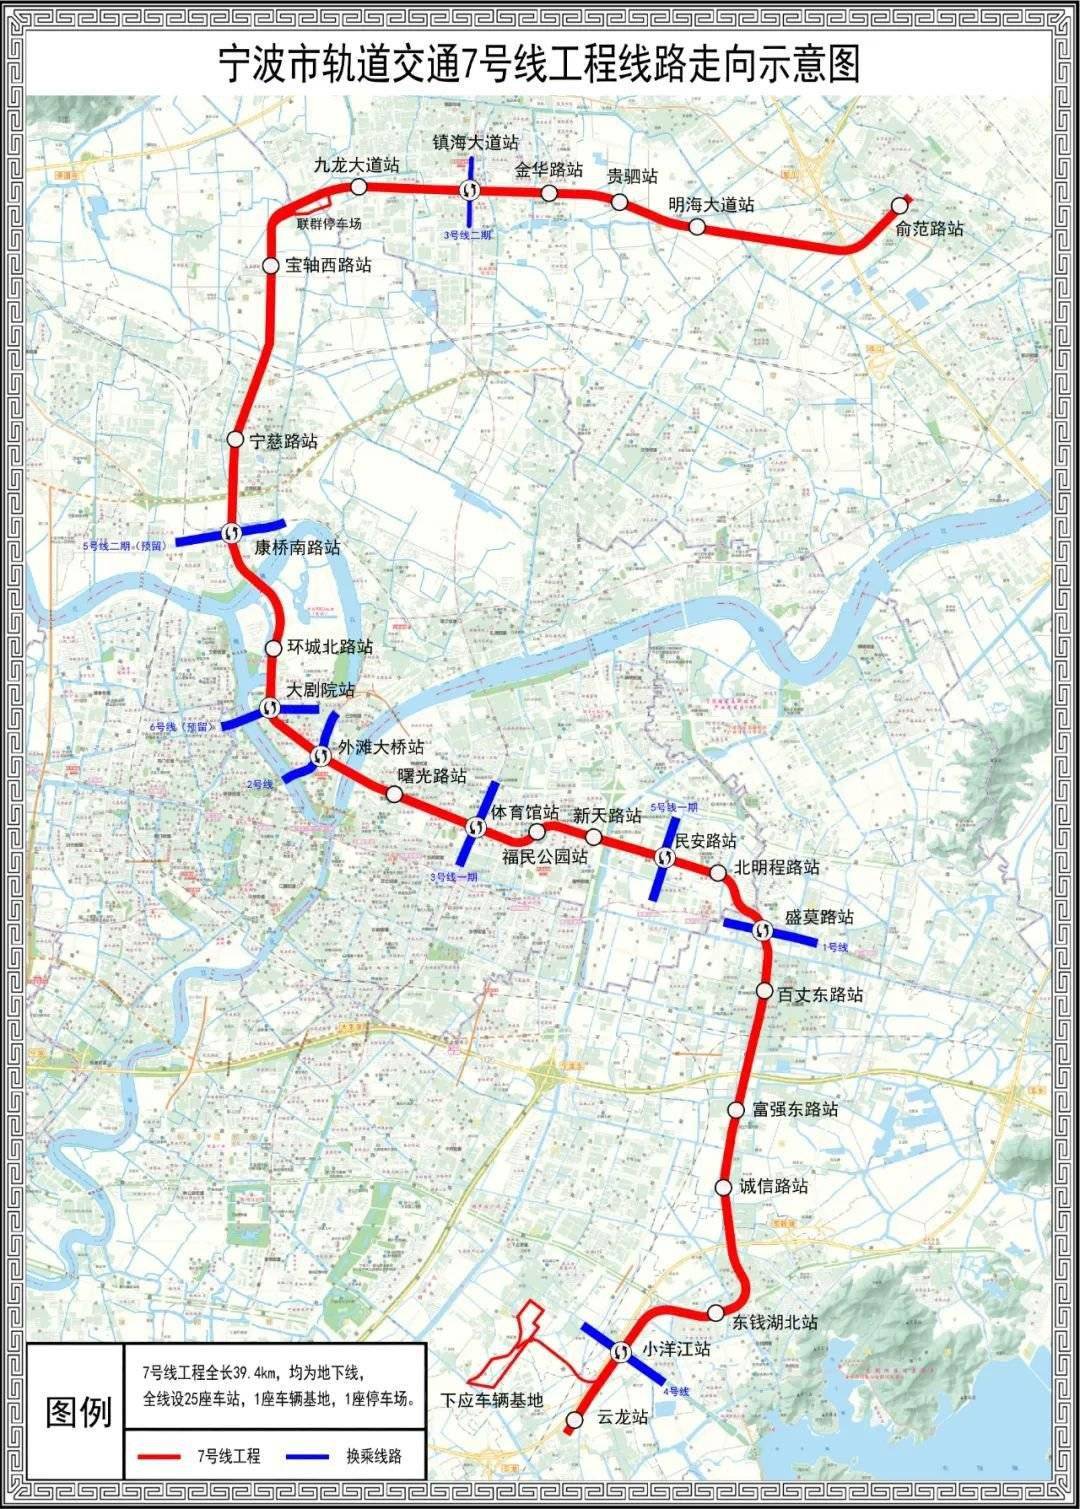 宁波轨道交通7号线,8号线一期工程规划选址公示!附高清站点图